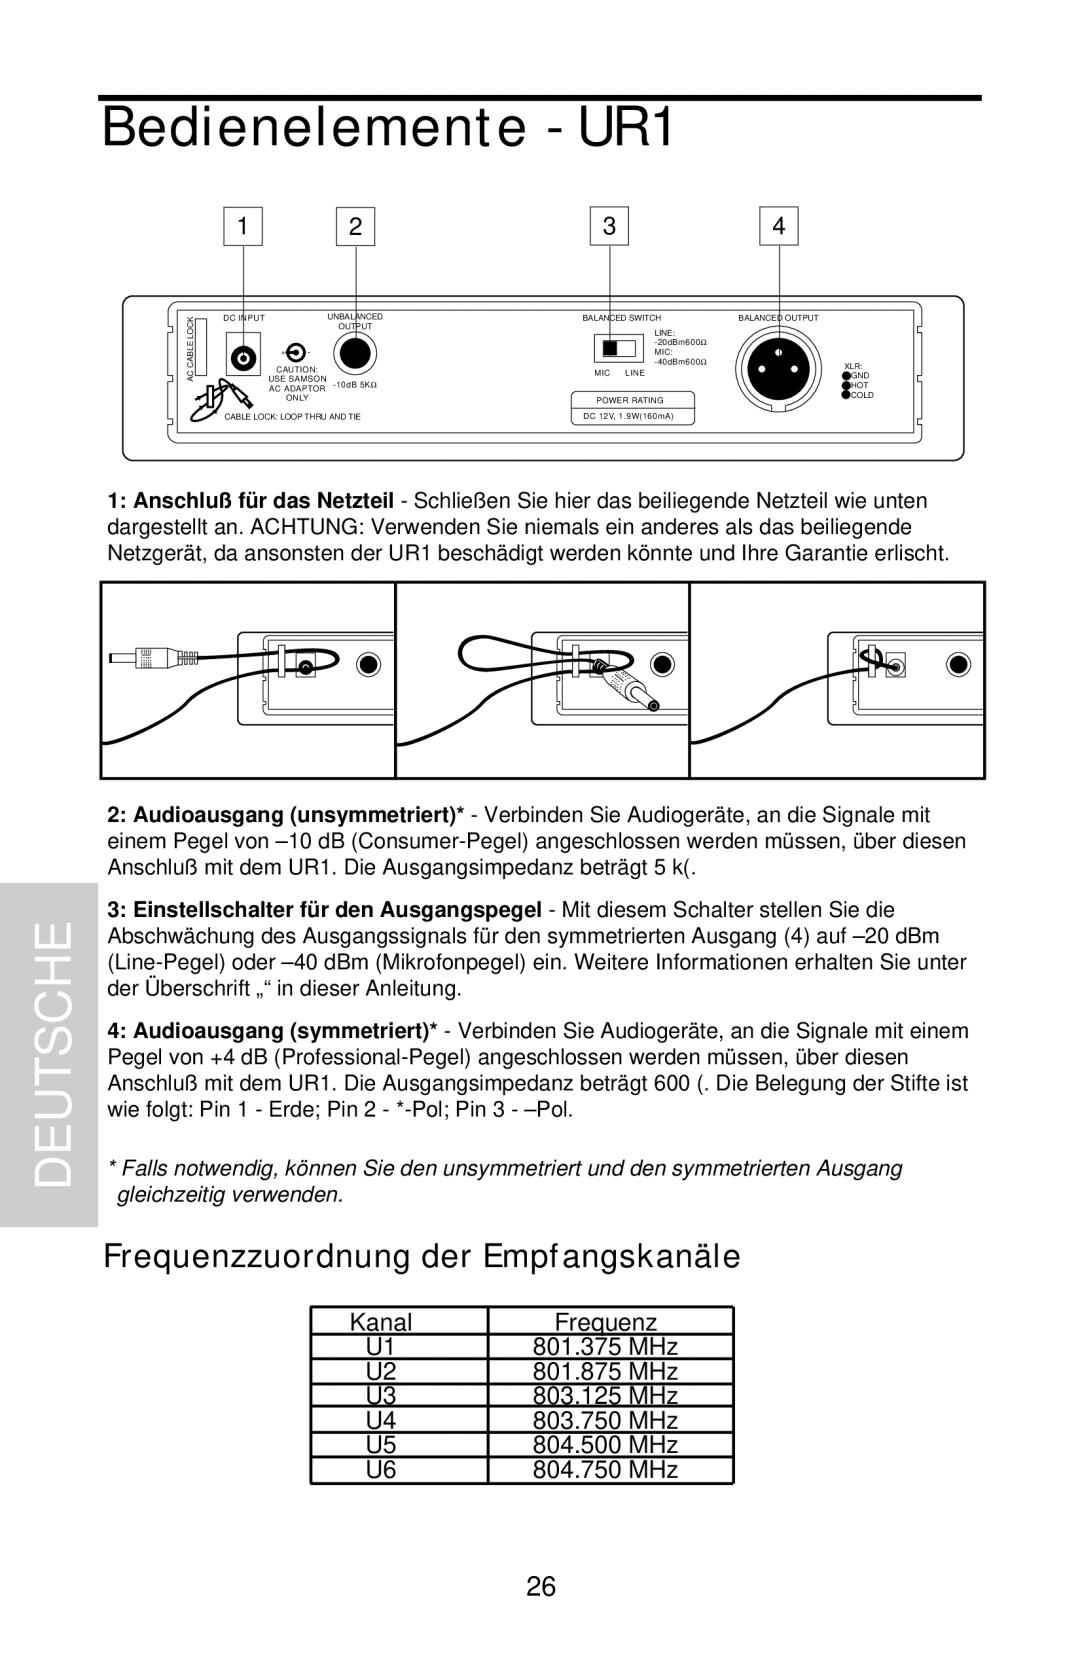 Samson UHF 801 owner manual Frequenzzuordnung der Empfangskanäle, Bedienelemente - UR1, Deutsche 